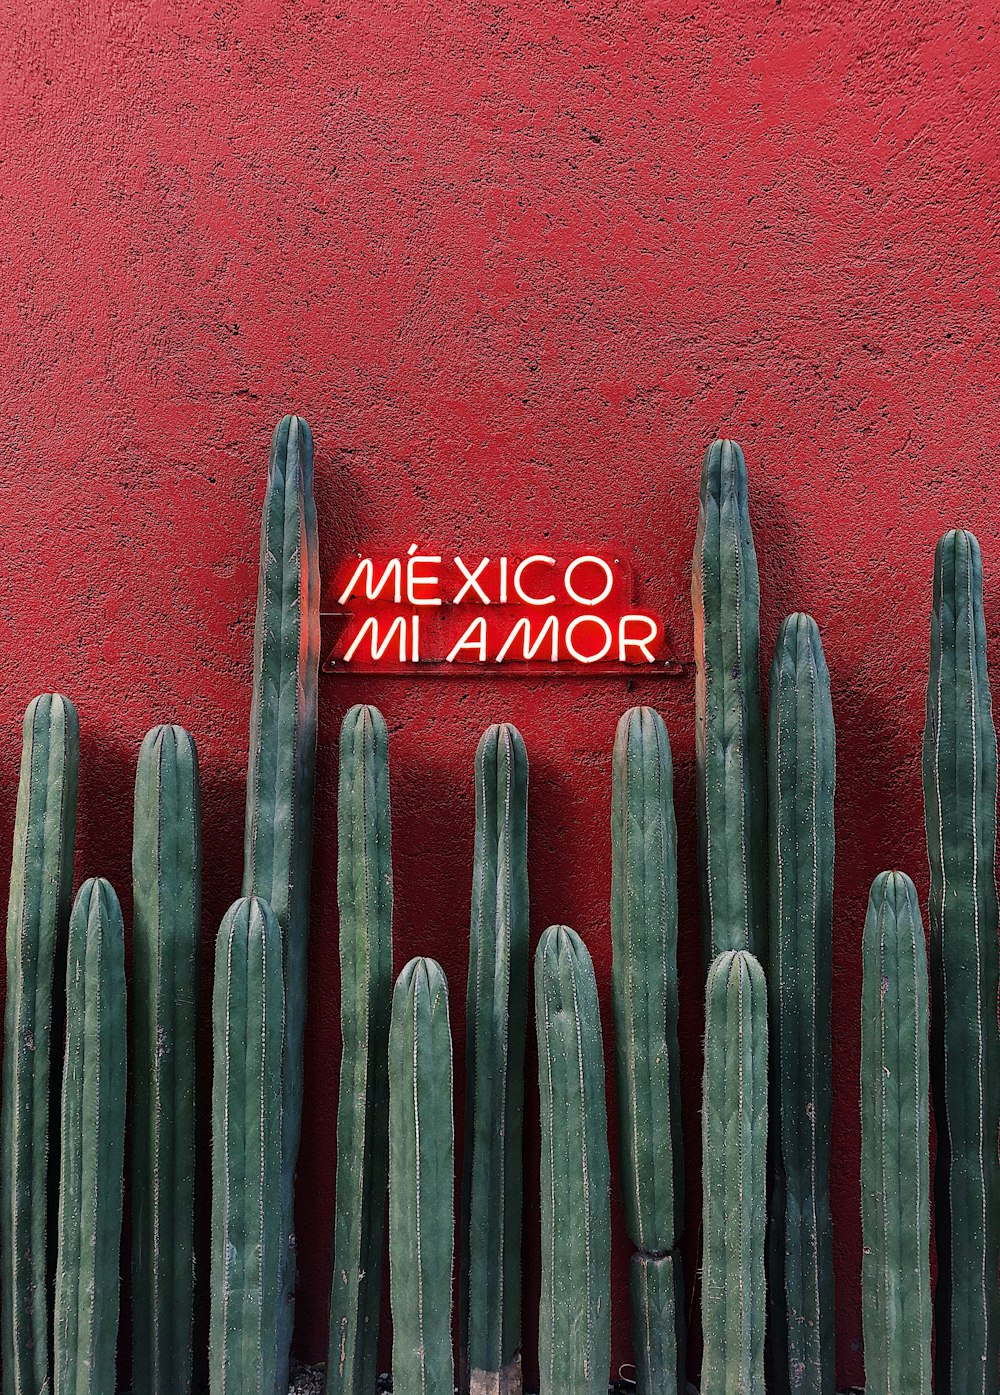 メキシコインナモールと書かれた看板のある赤い壁